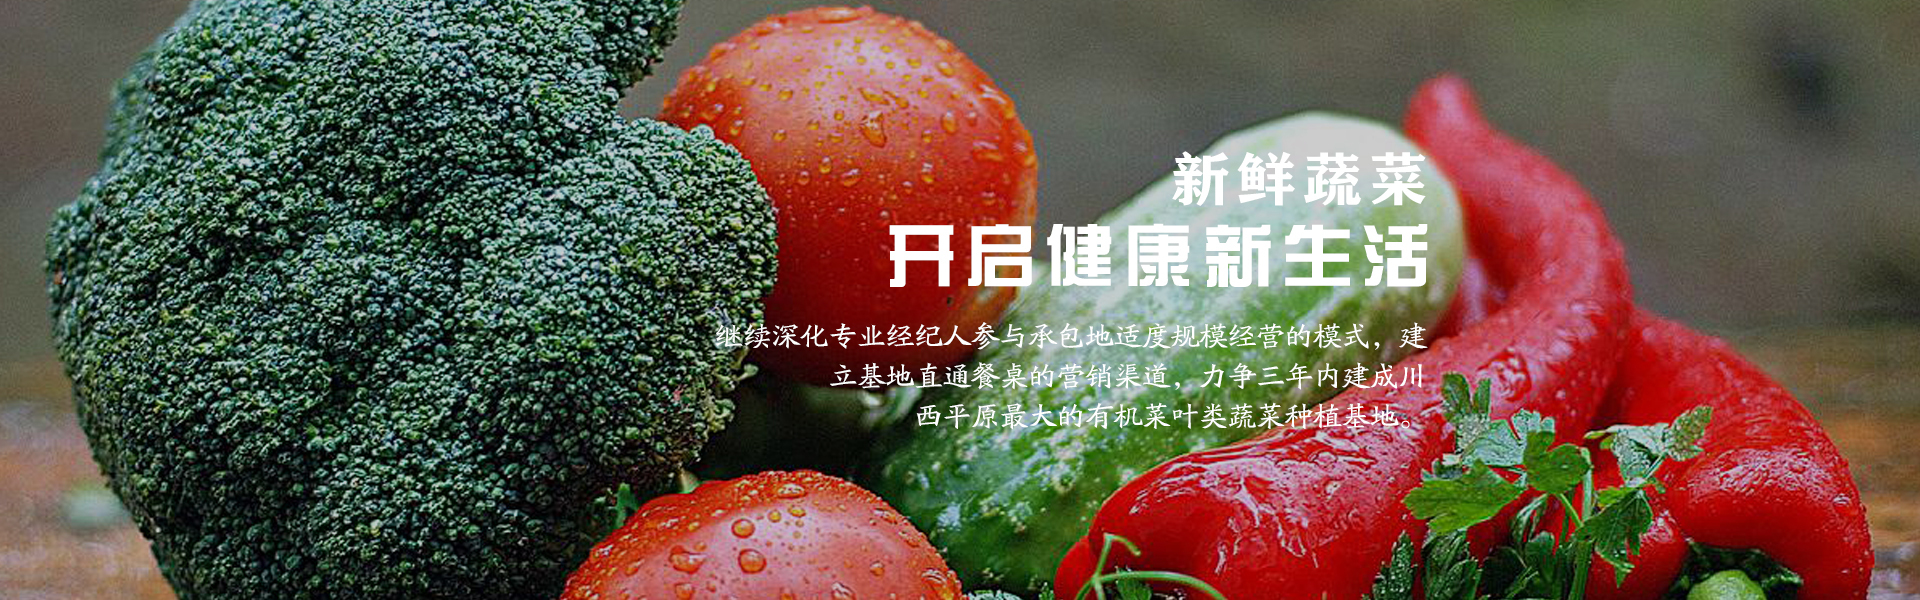 质量好的蔬菜批发商_绿色健康销售-成都市录超农业有限责任公司